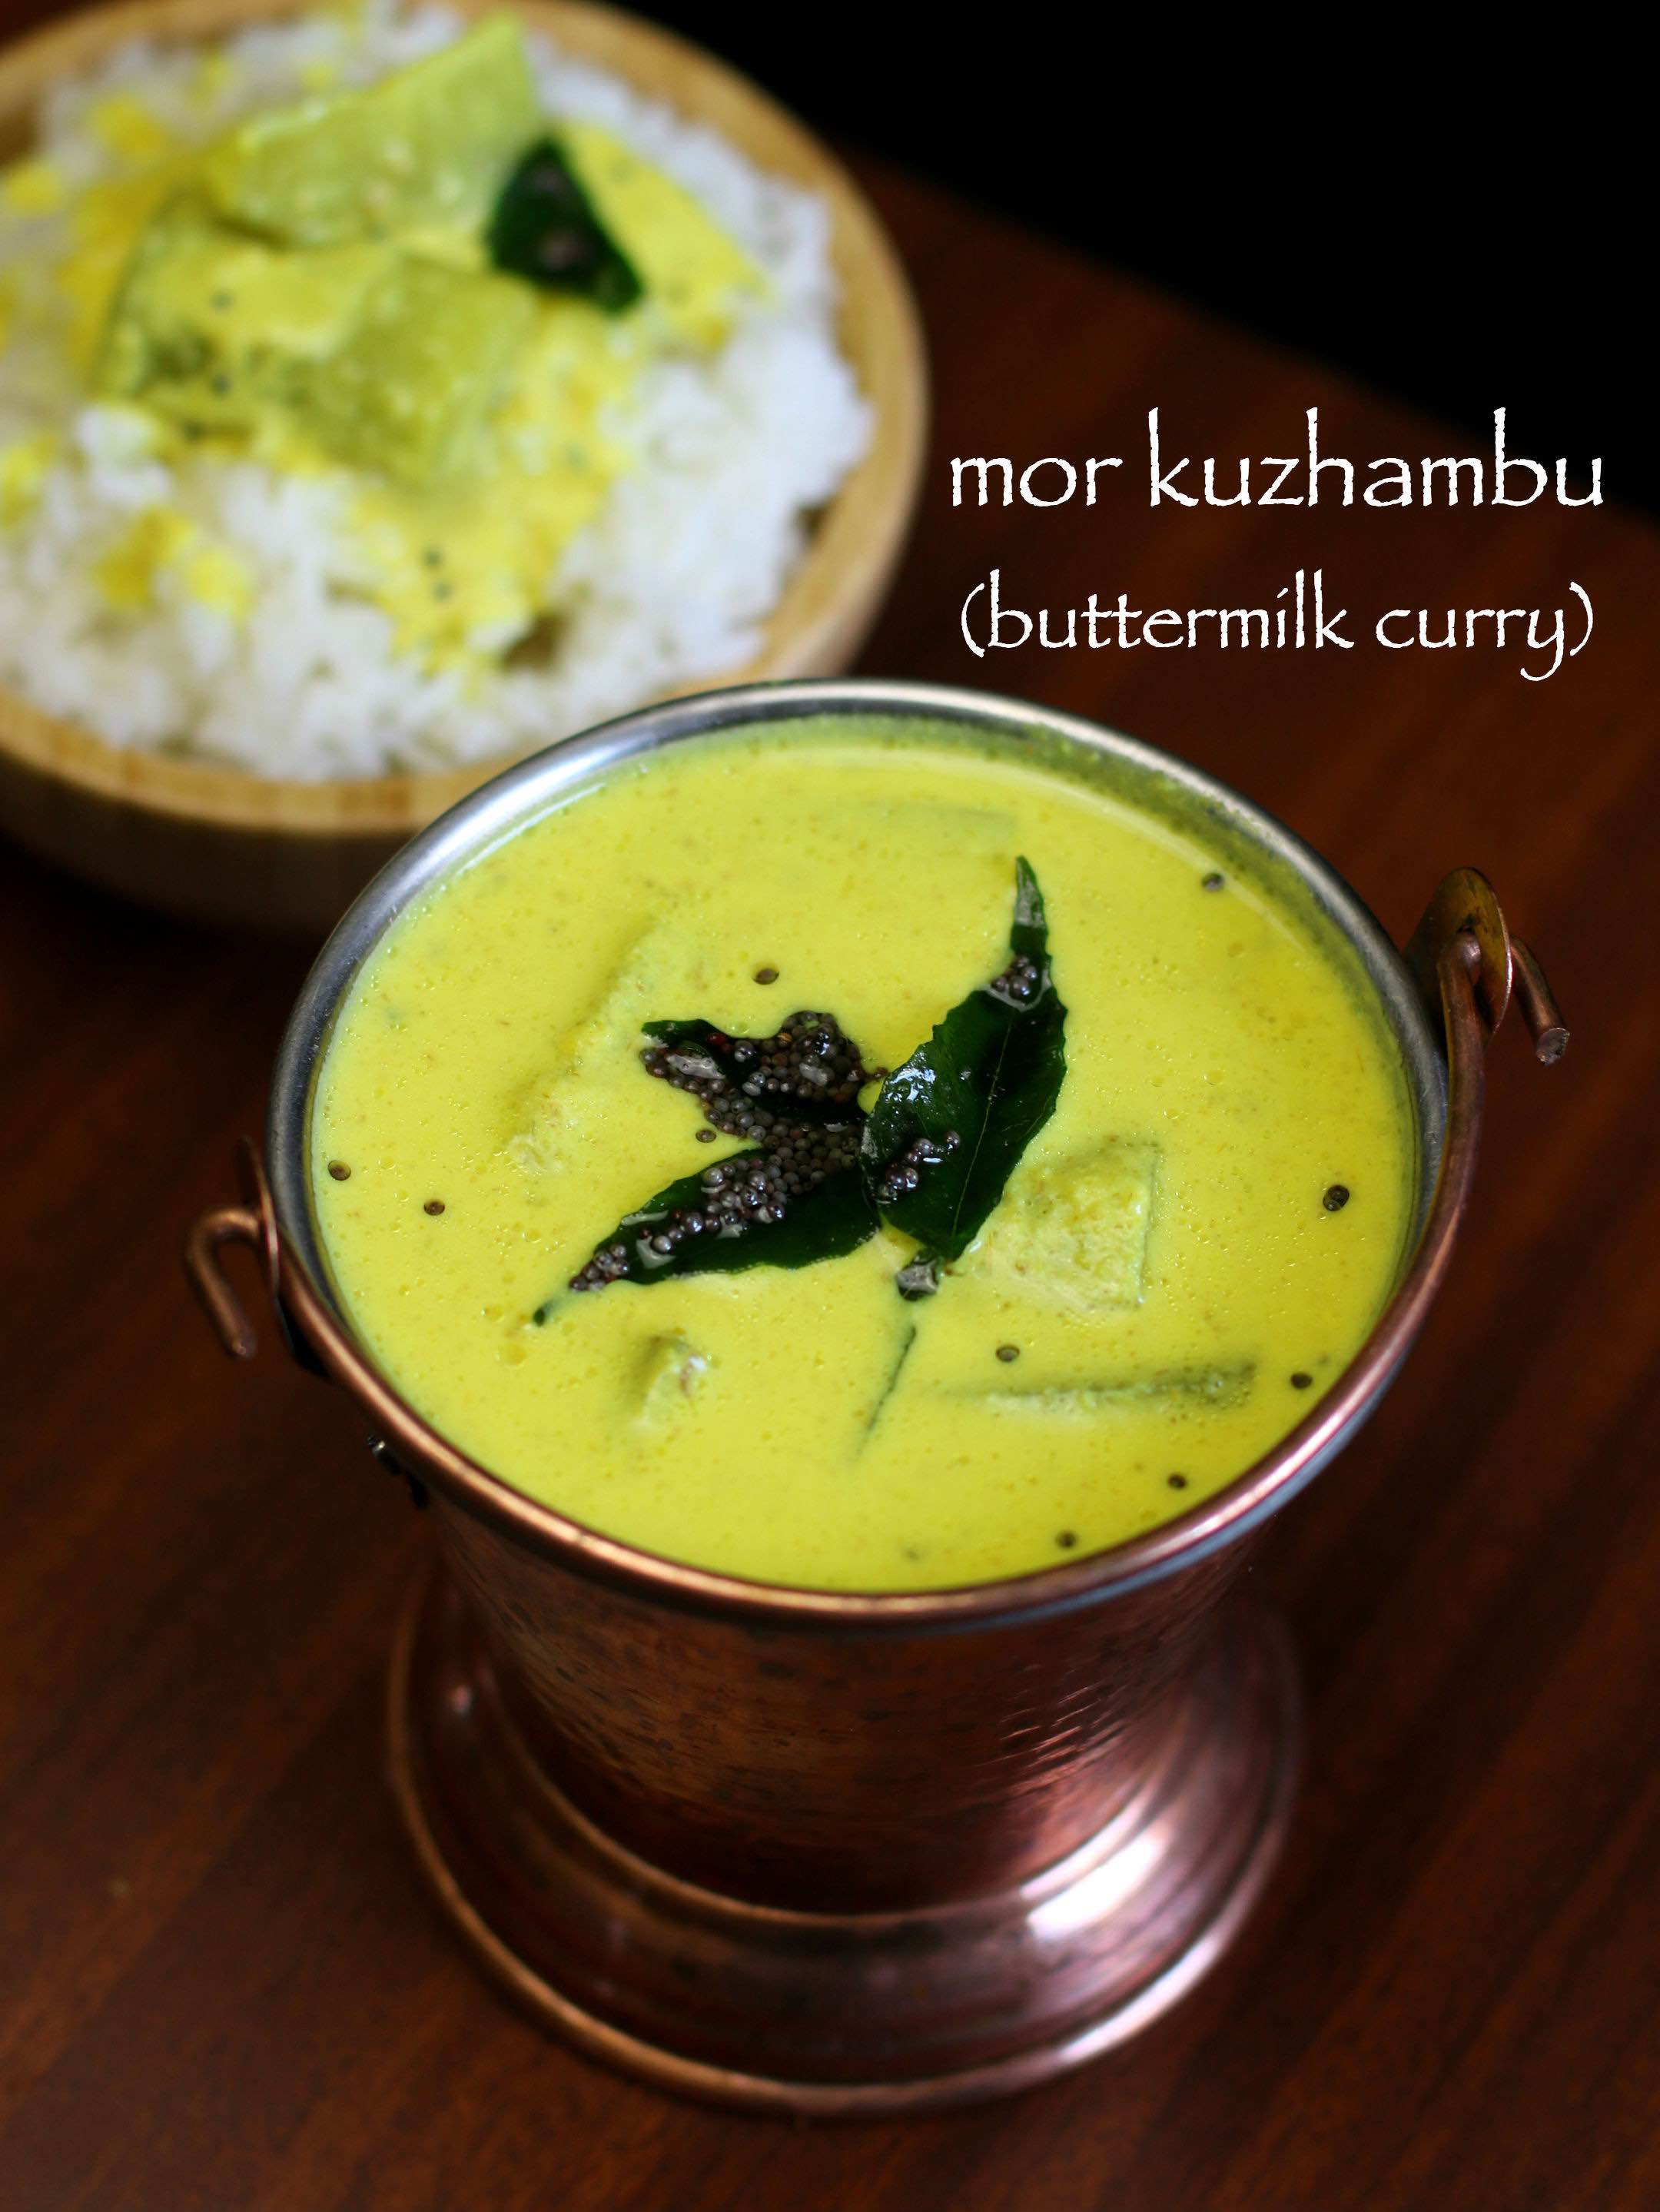 More Kulambu In Tamil Mor Kuzhambu Recipe In Tamil Kulambu Varieties In Tamil